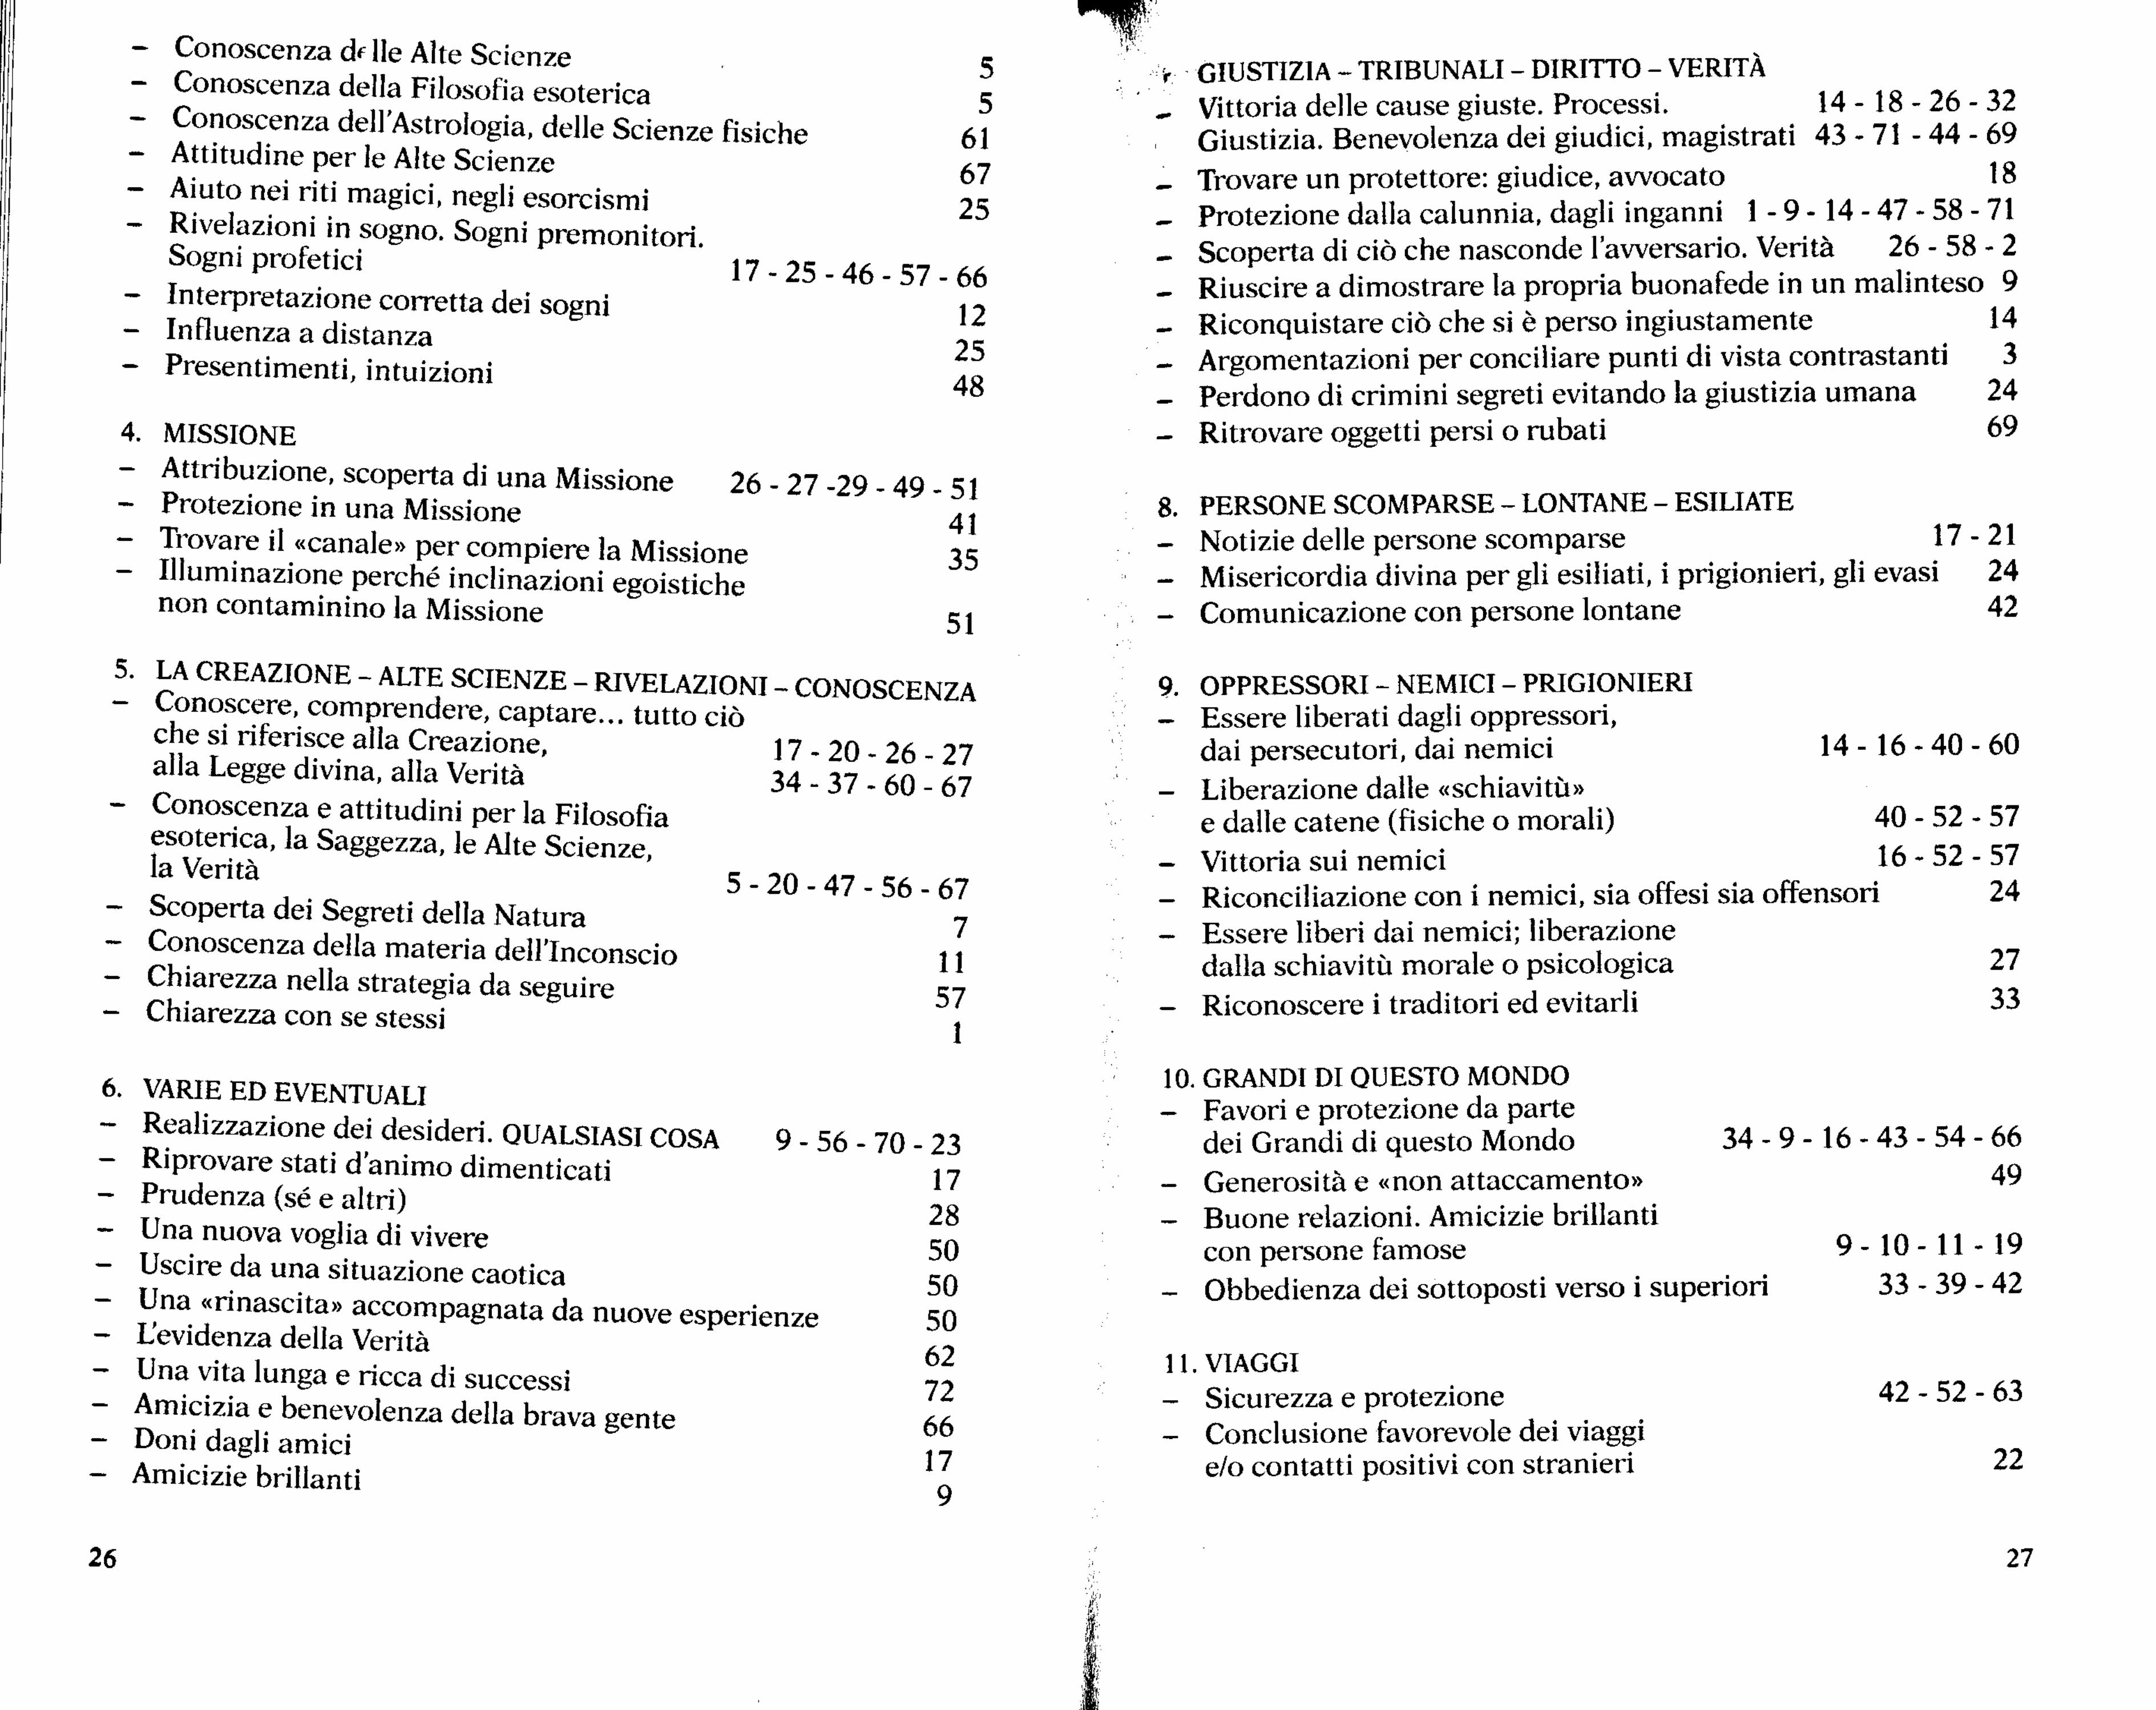 (PDF) Haziel Il grande libro delle invocazioni e delle esortazioni DOKUMEN.TIPS